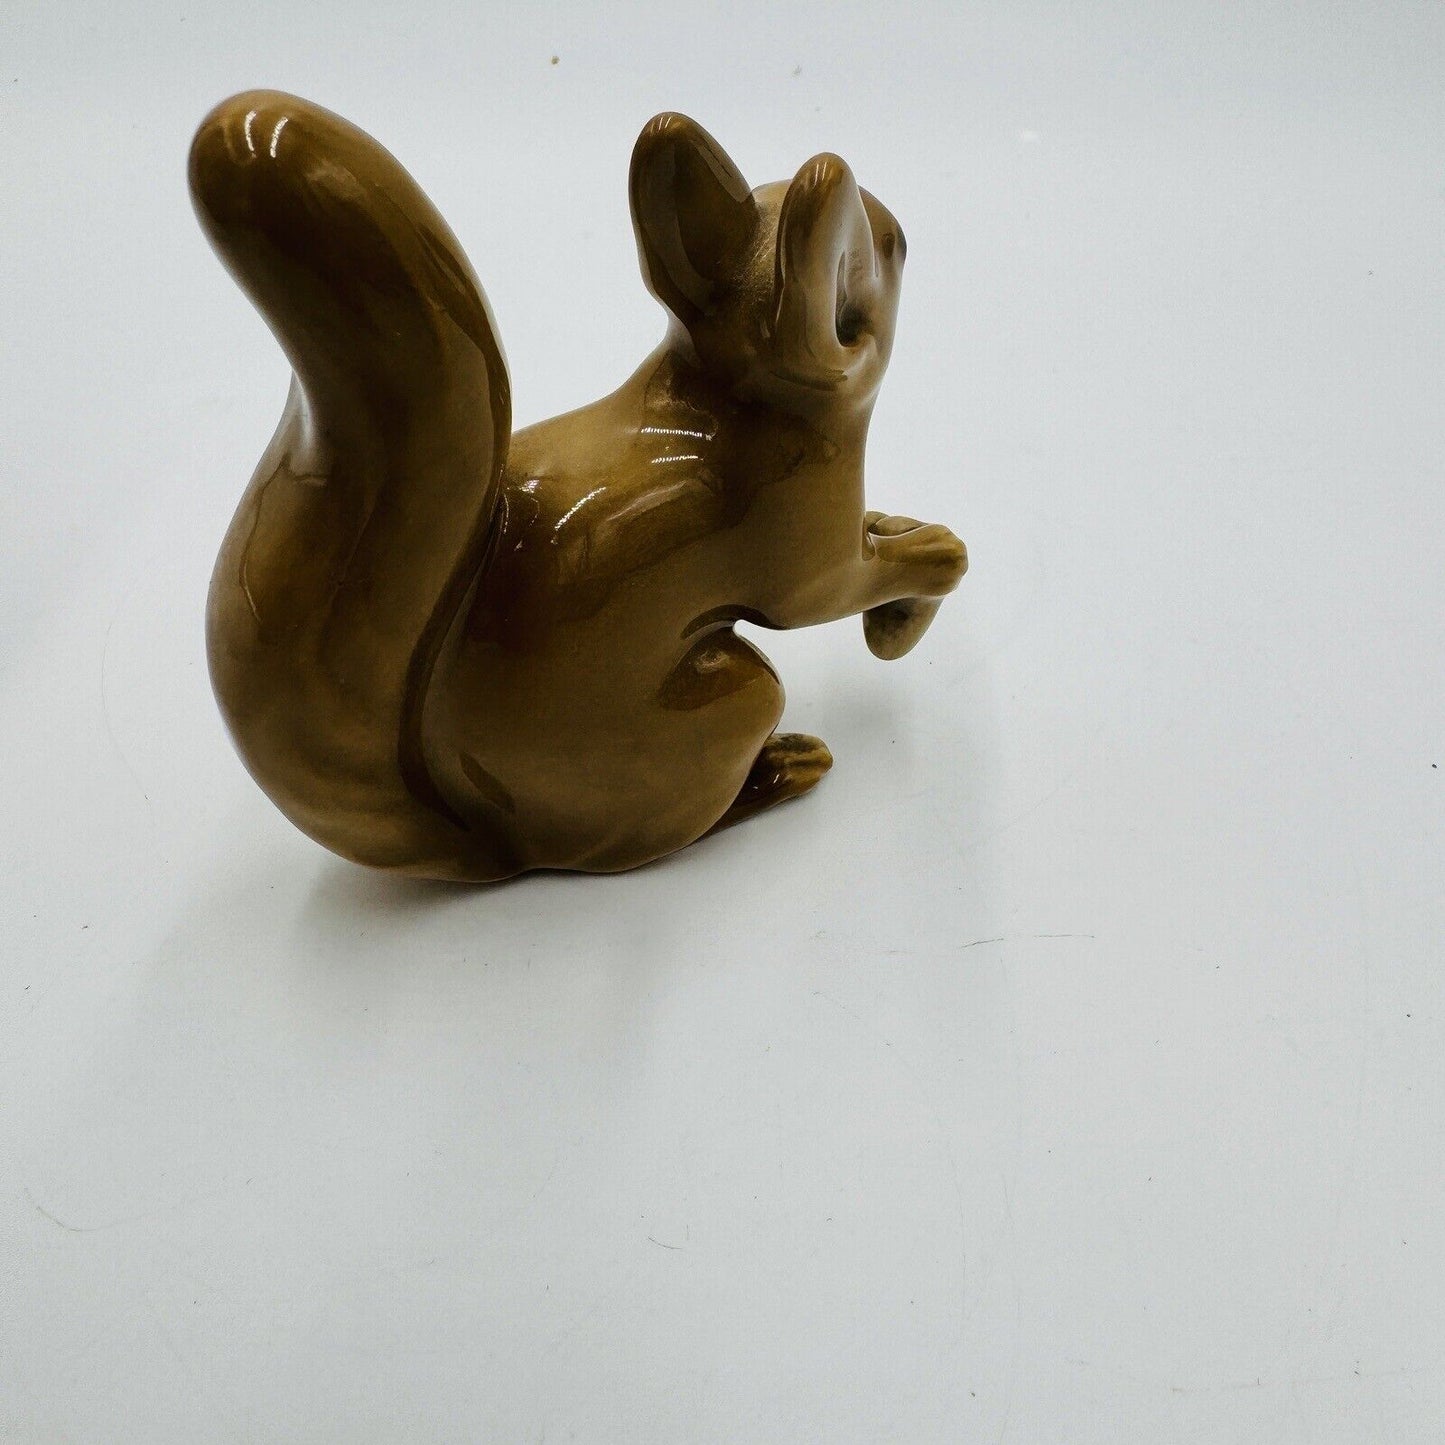 Vintage Bing & Grondahl Porcelain Squirrel Figurine #2177 by Svend Jespersen